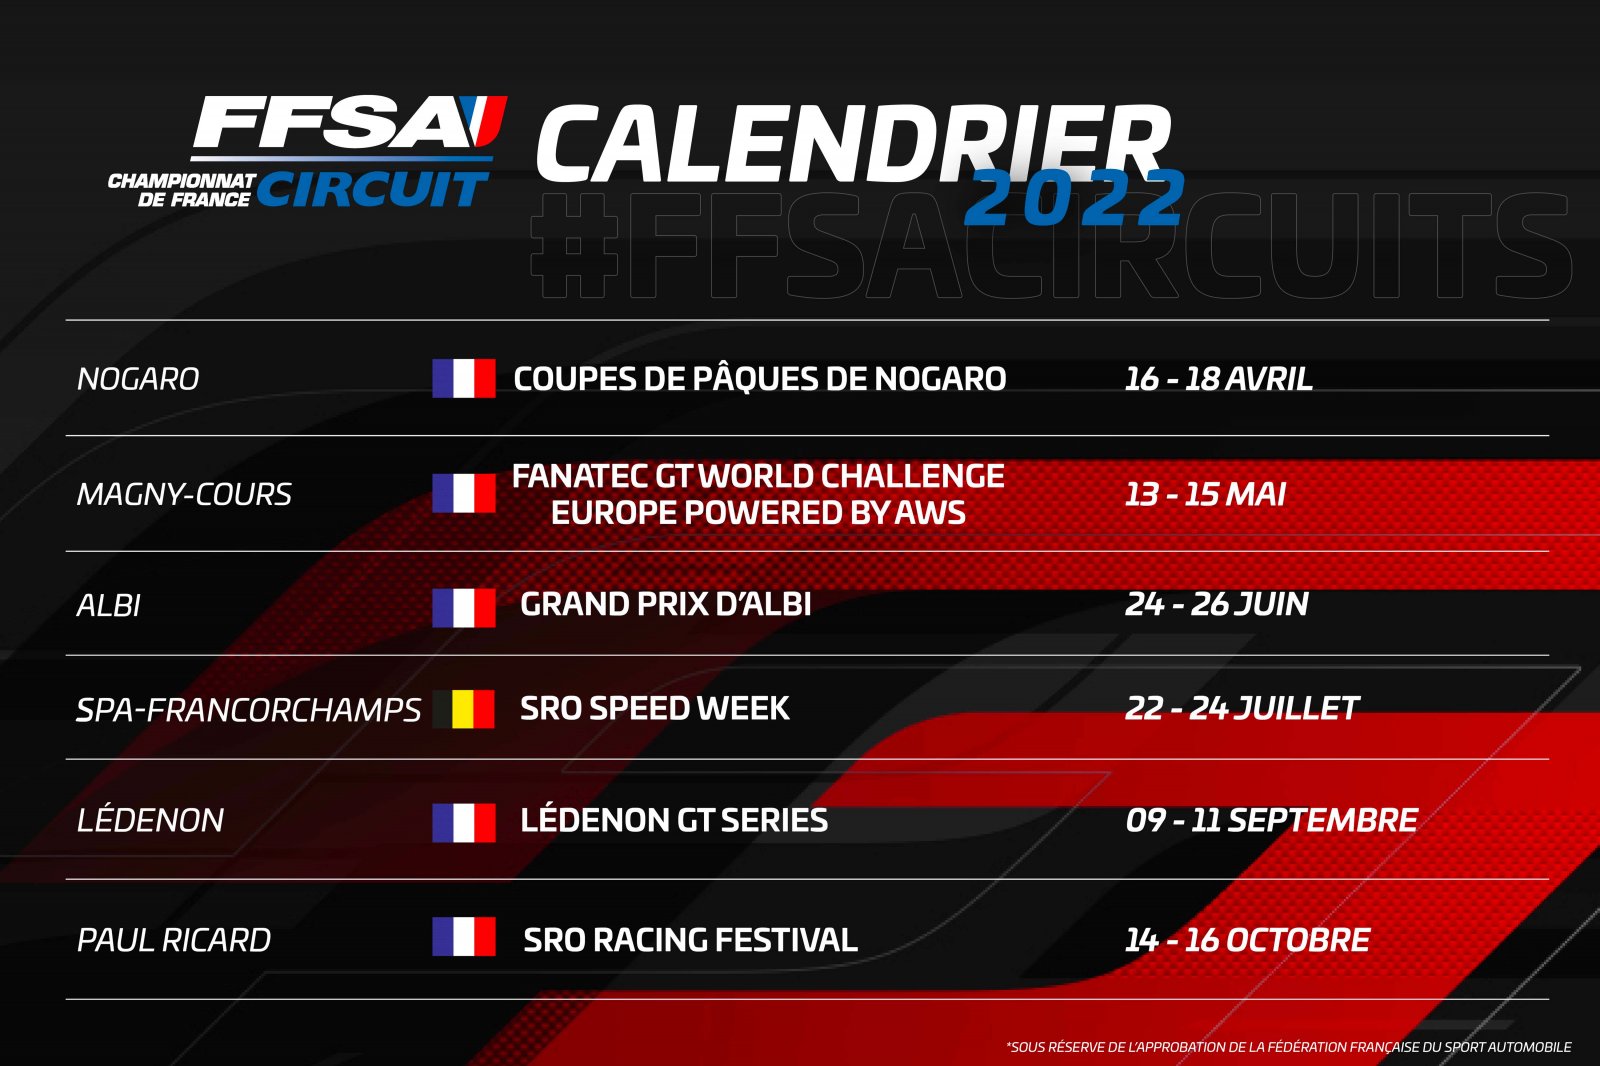 Le Championnat de France FFSA des Circuits dans la continuité